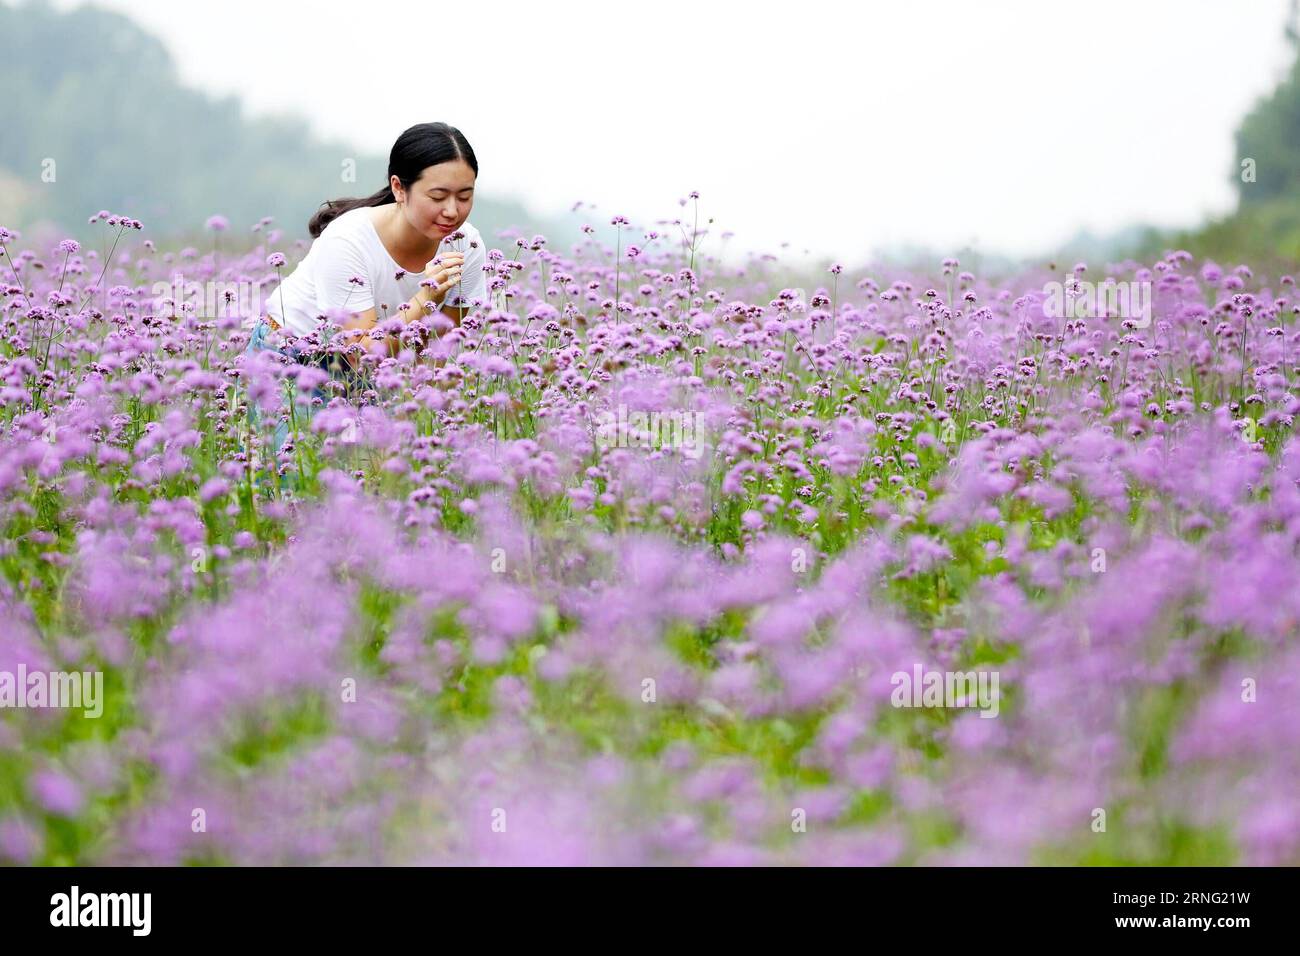 (160902) -- NAN, 2 septembre 2016 -- Une femme s'amuse parmi les fleurs de verveine à Xiangyang Town dans la ville de Nan an an, province du Fujian dans le sud-est de la Chine, 2 septembre 2016.) (Yxb) CHINA-FUJIAN-NAN AN-VERBENA FLOWER(CN) ZhangxJiuqiang PUBLICATIONxNOTxINxCHN 160902 Nan À septembre 2 2016 une femme s'amuse parmi les fleurs de Verbena à Xiang Yang Town in Nan to City South East China S Fujian province sept 2 2016 yxb China Fujian to Verbena Flower CN ZhangxIONTchionTang Banque D'Images